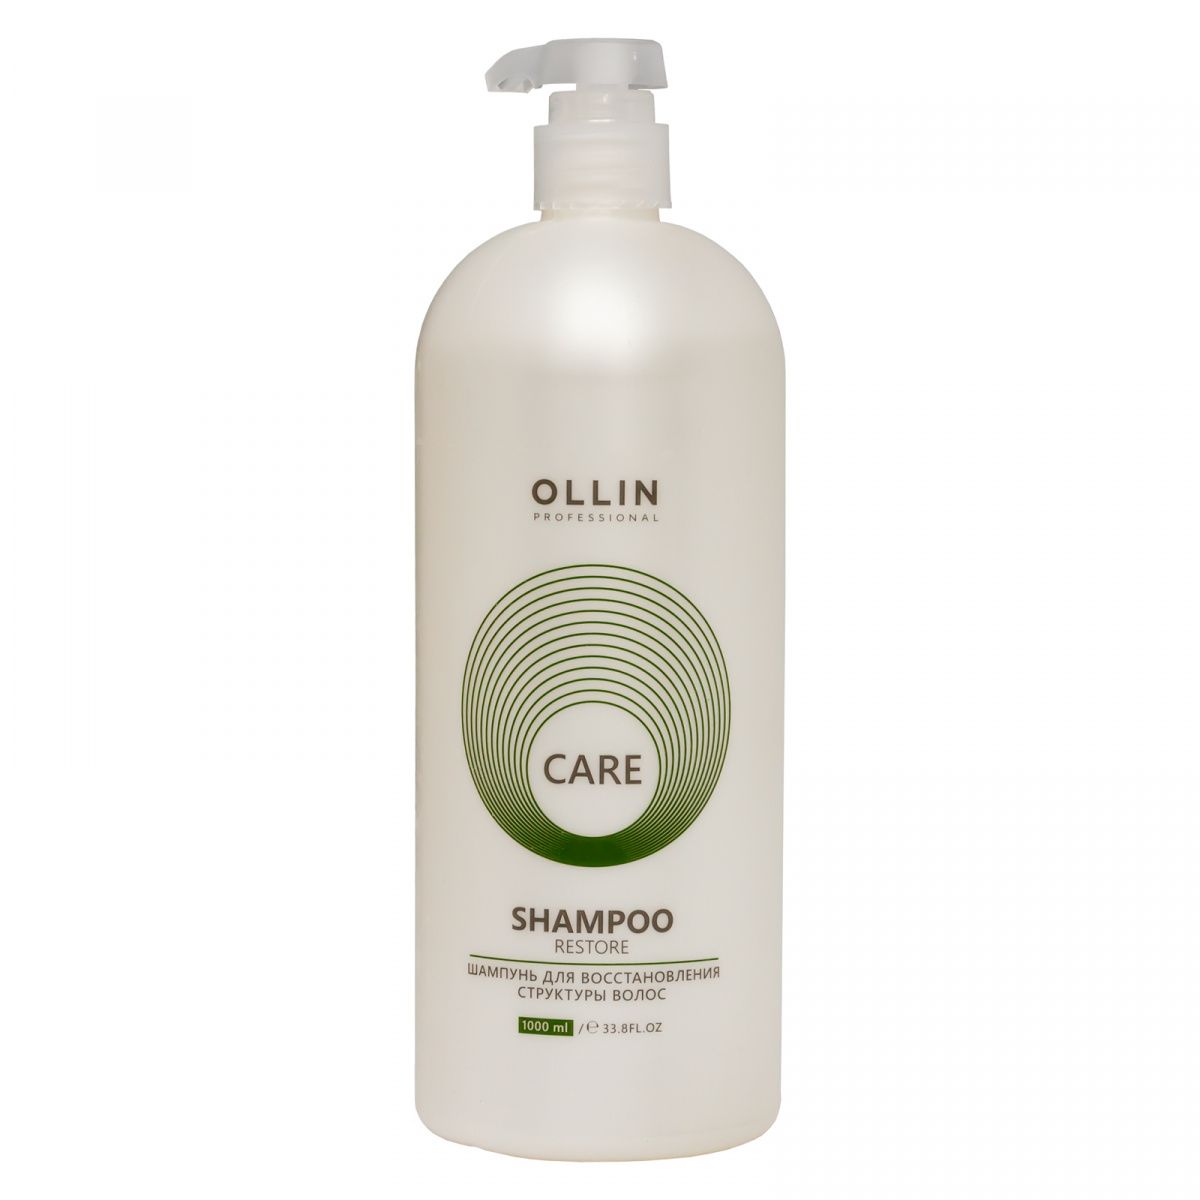 Ollin Care Restore Shampoo 54603